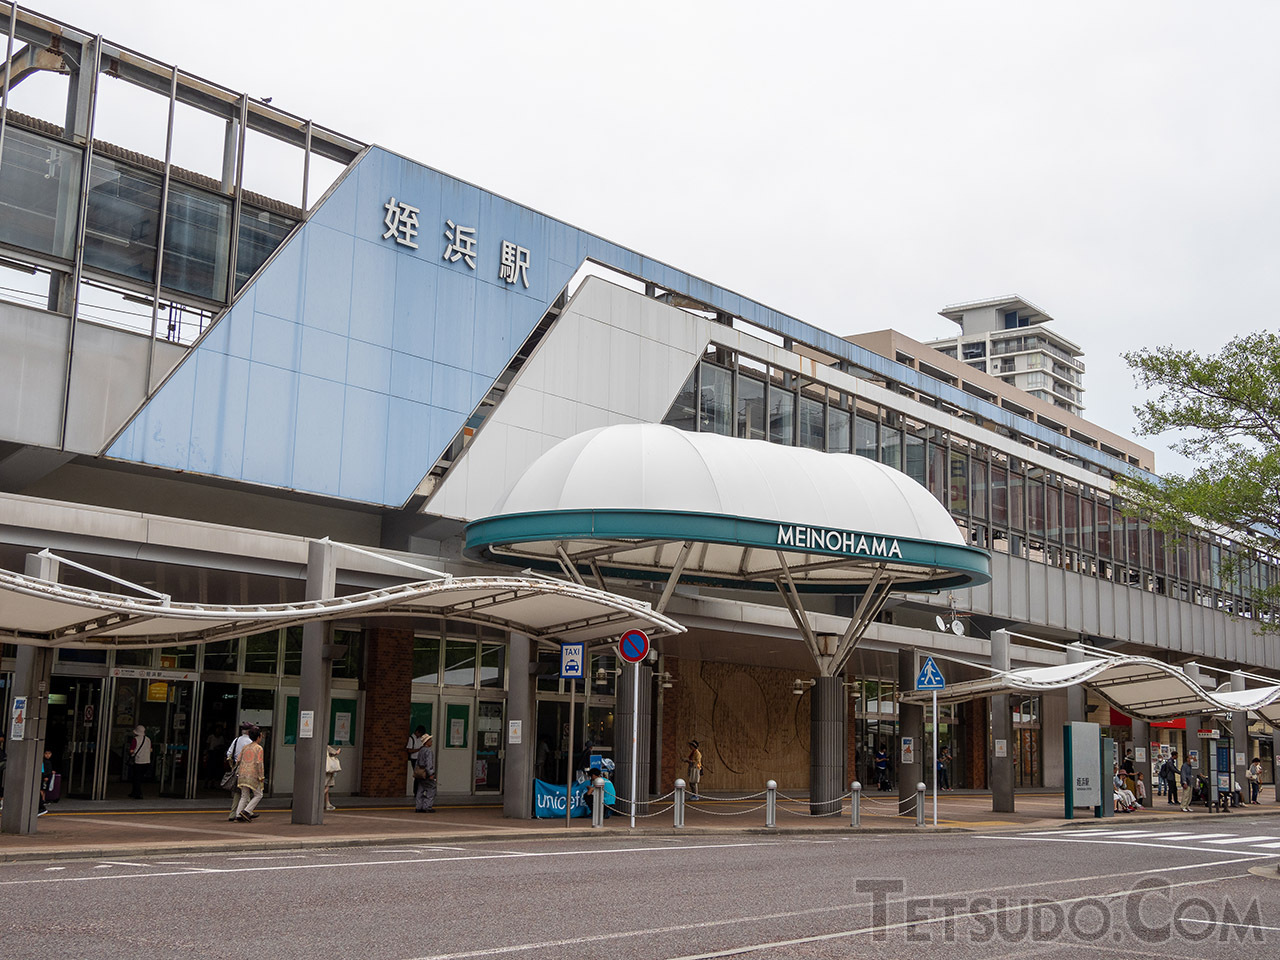 福岡市営地下鉄空港線とJR筑肥線の接点となっている姪浜駅。両路線とも、当駅を始発駅としています